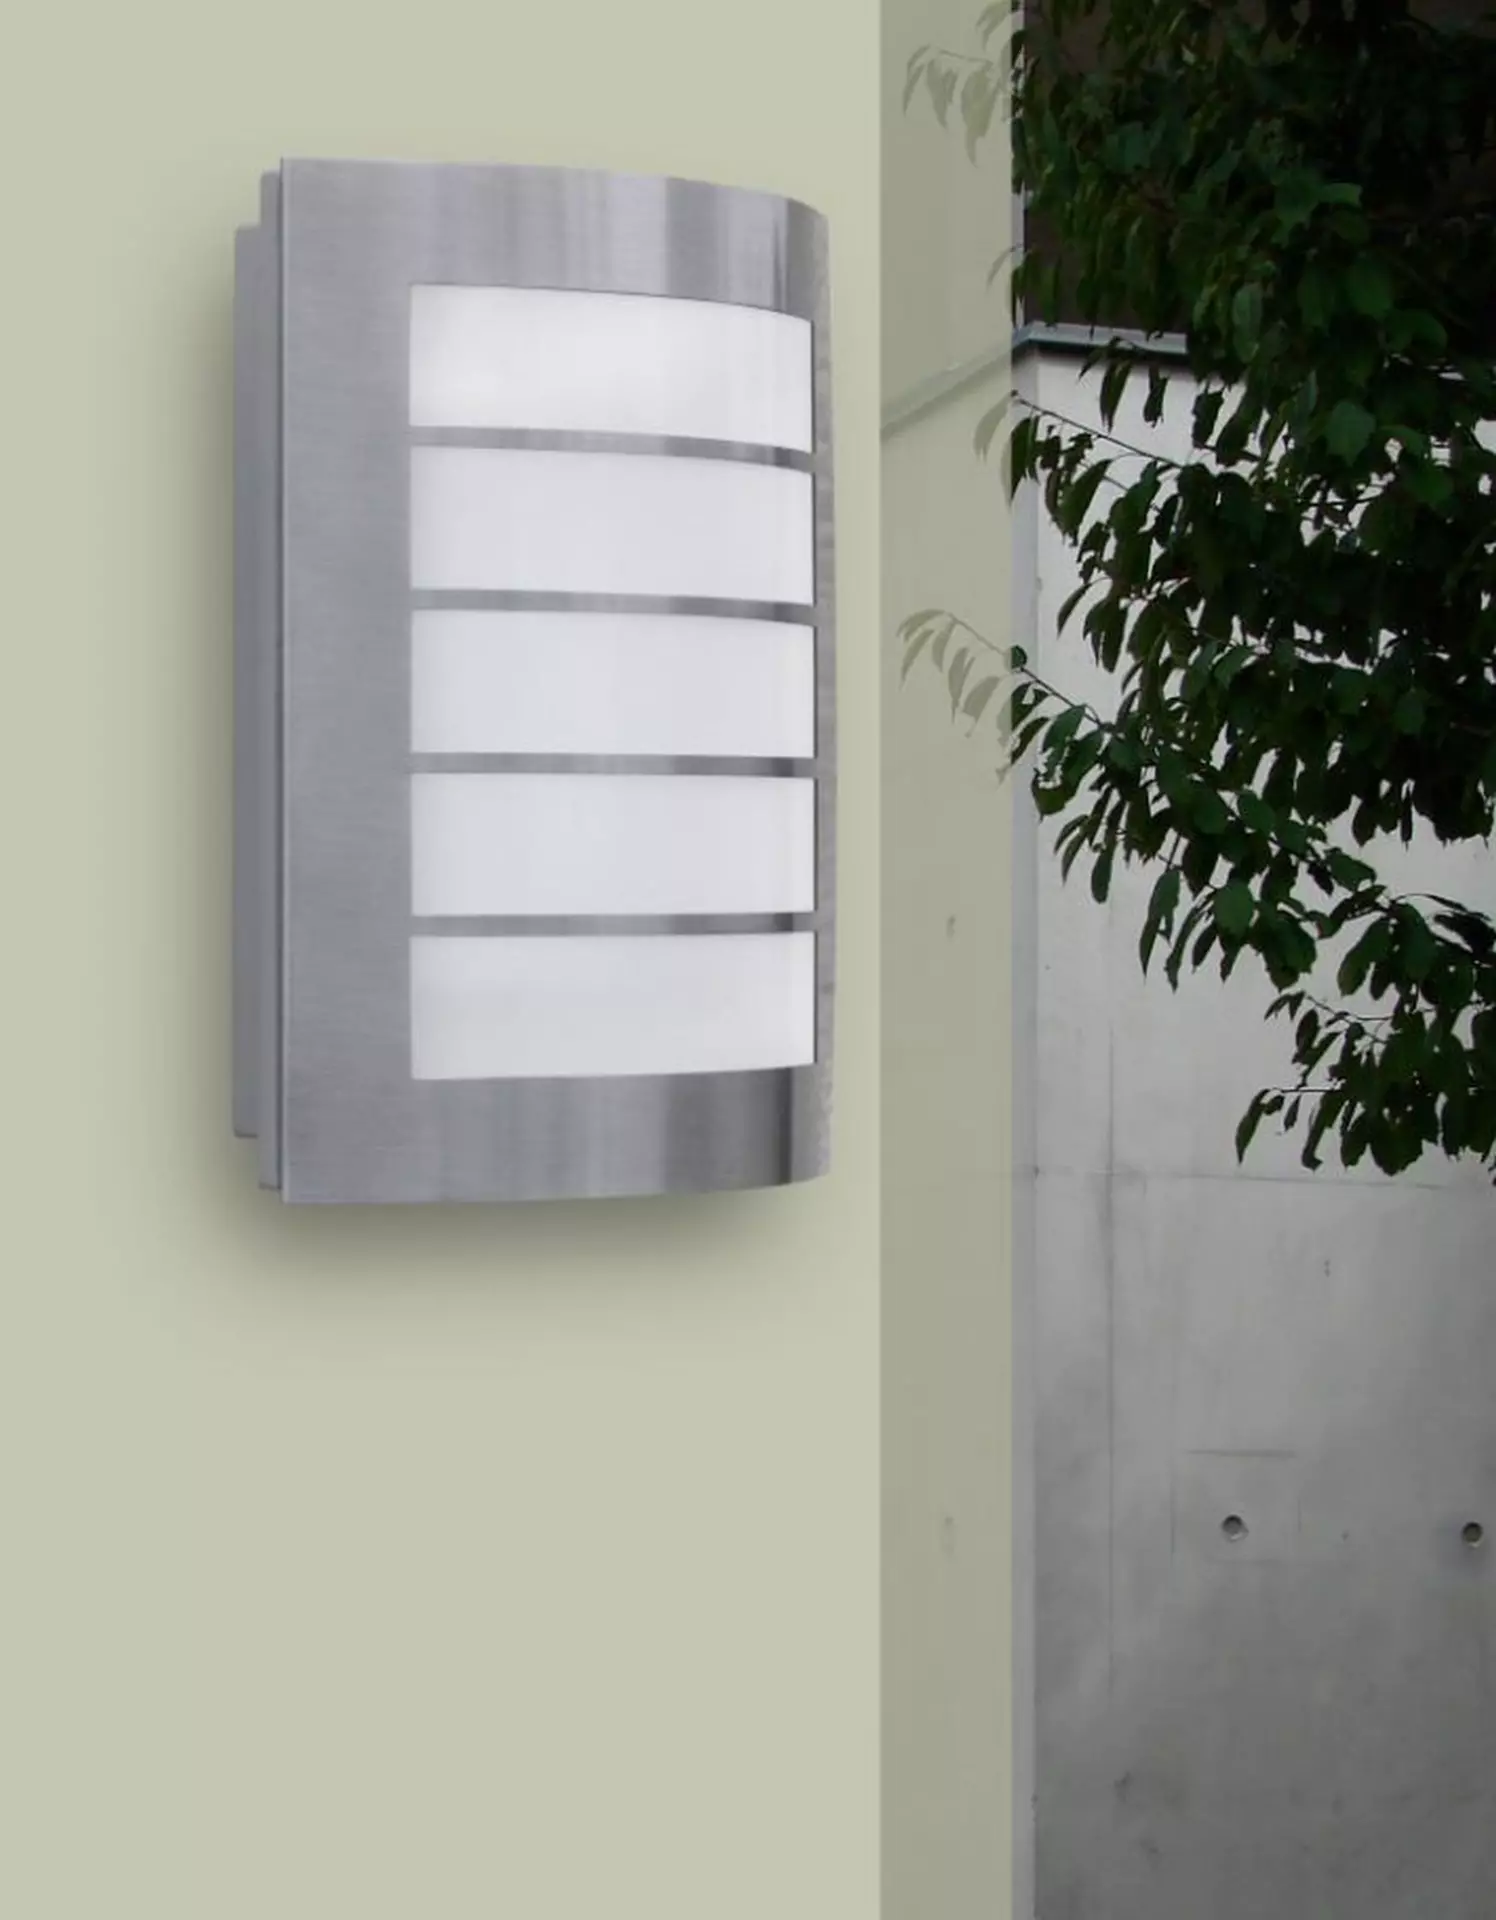 Wand-Aussenleuchte Slim Eco-Light Metall 17 x 26 x 6 cm